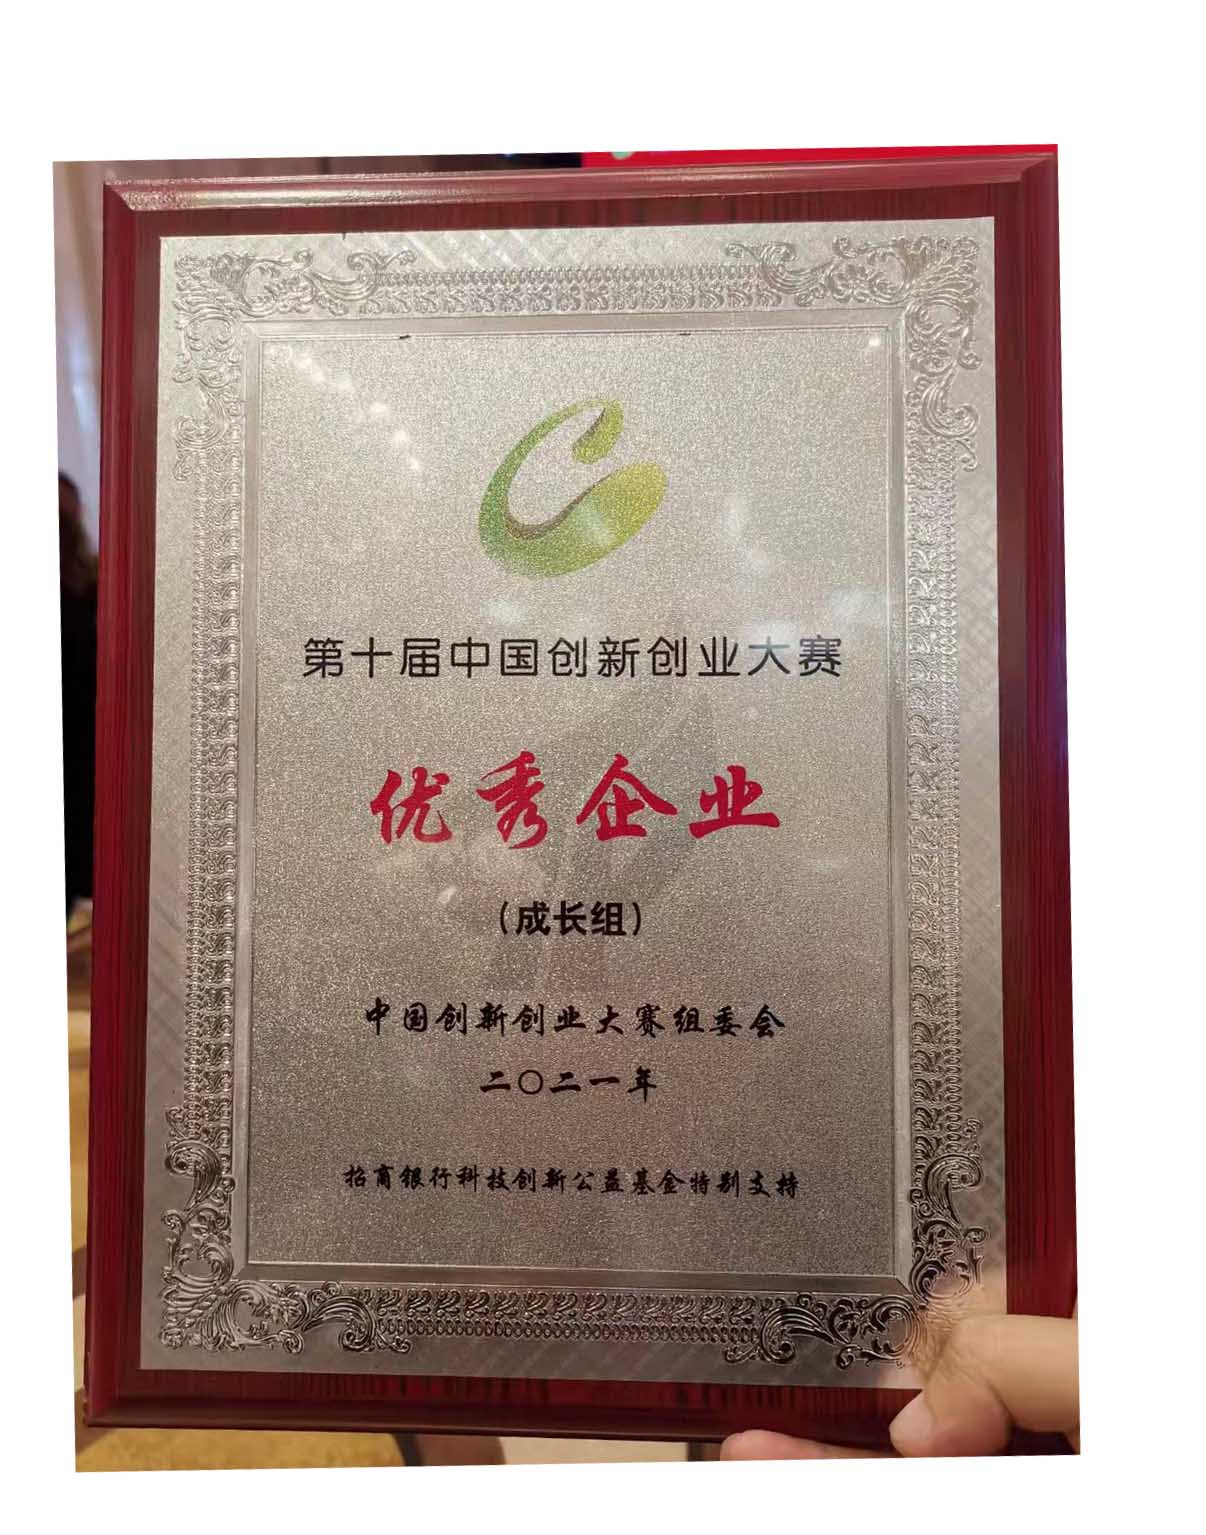 BOB体育综合官方平台荣获第十届中国创新创业大赛优秀企业奖